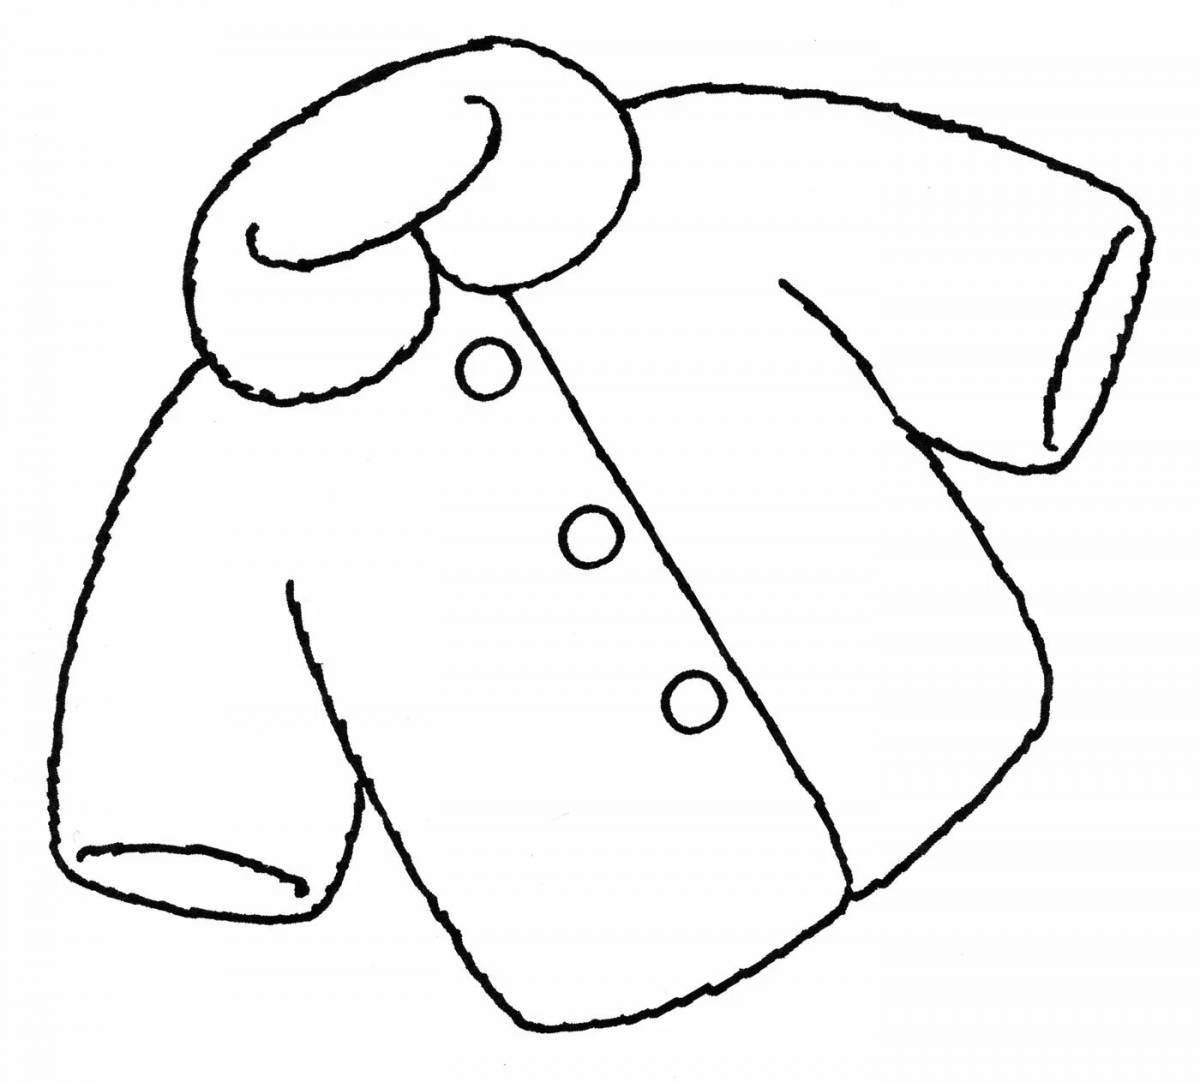 Увлекательная раскраска куртки для детей 3-4 лет